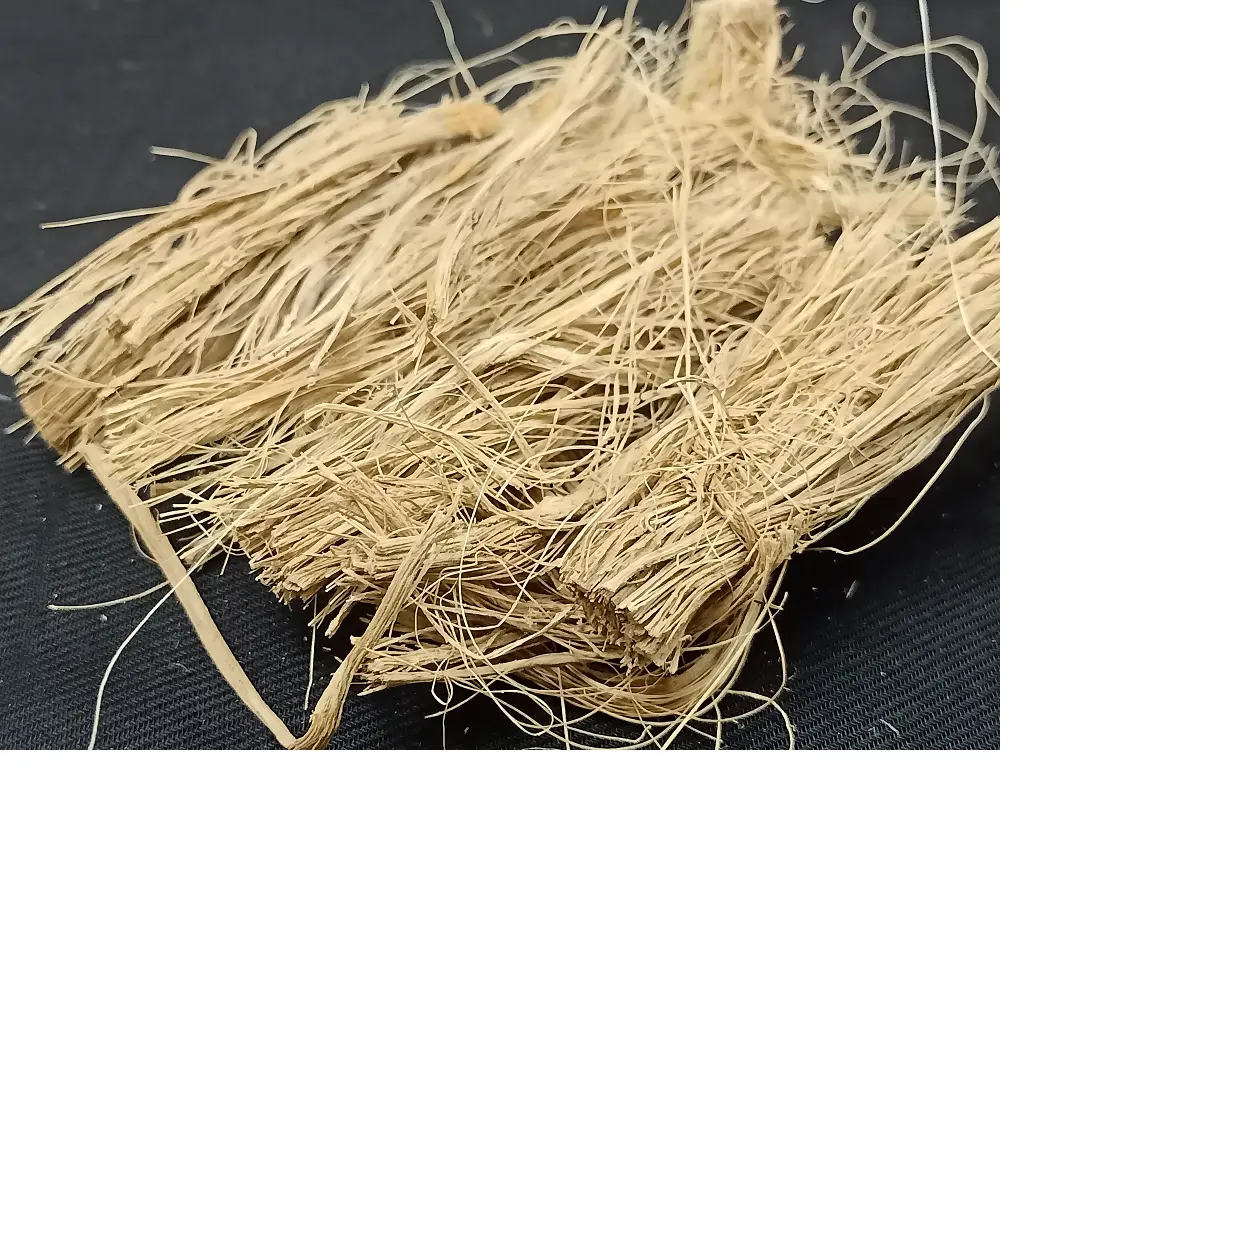 Волокна натуральной крапивы размера 6 см подходят для текстиля, образовательного и технического применения